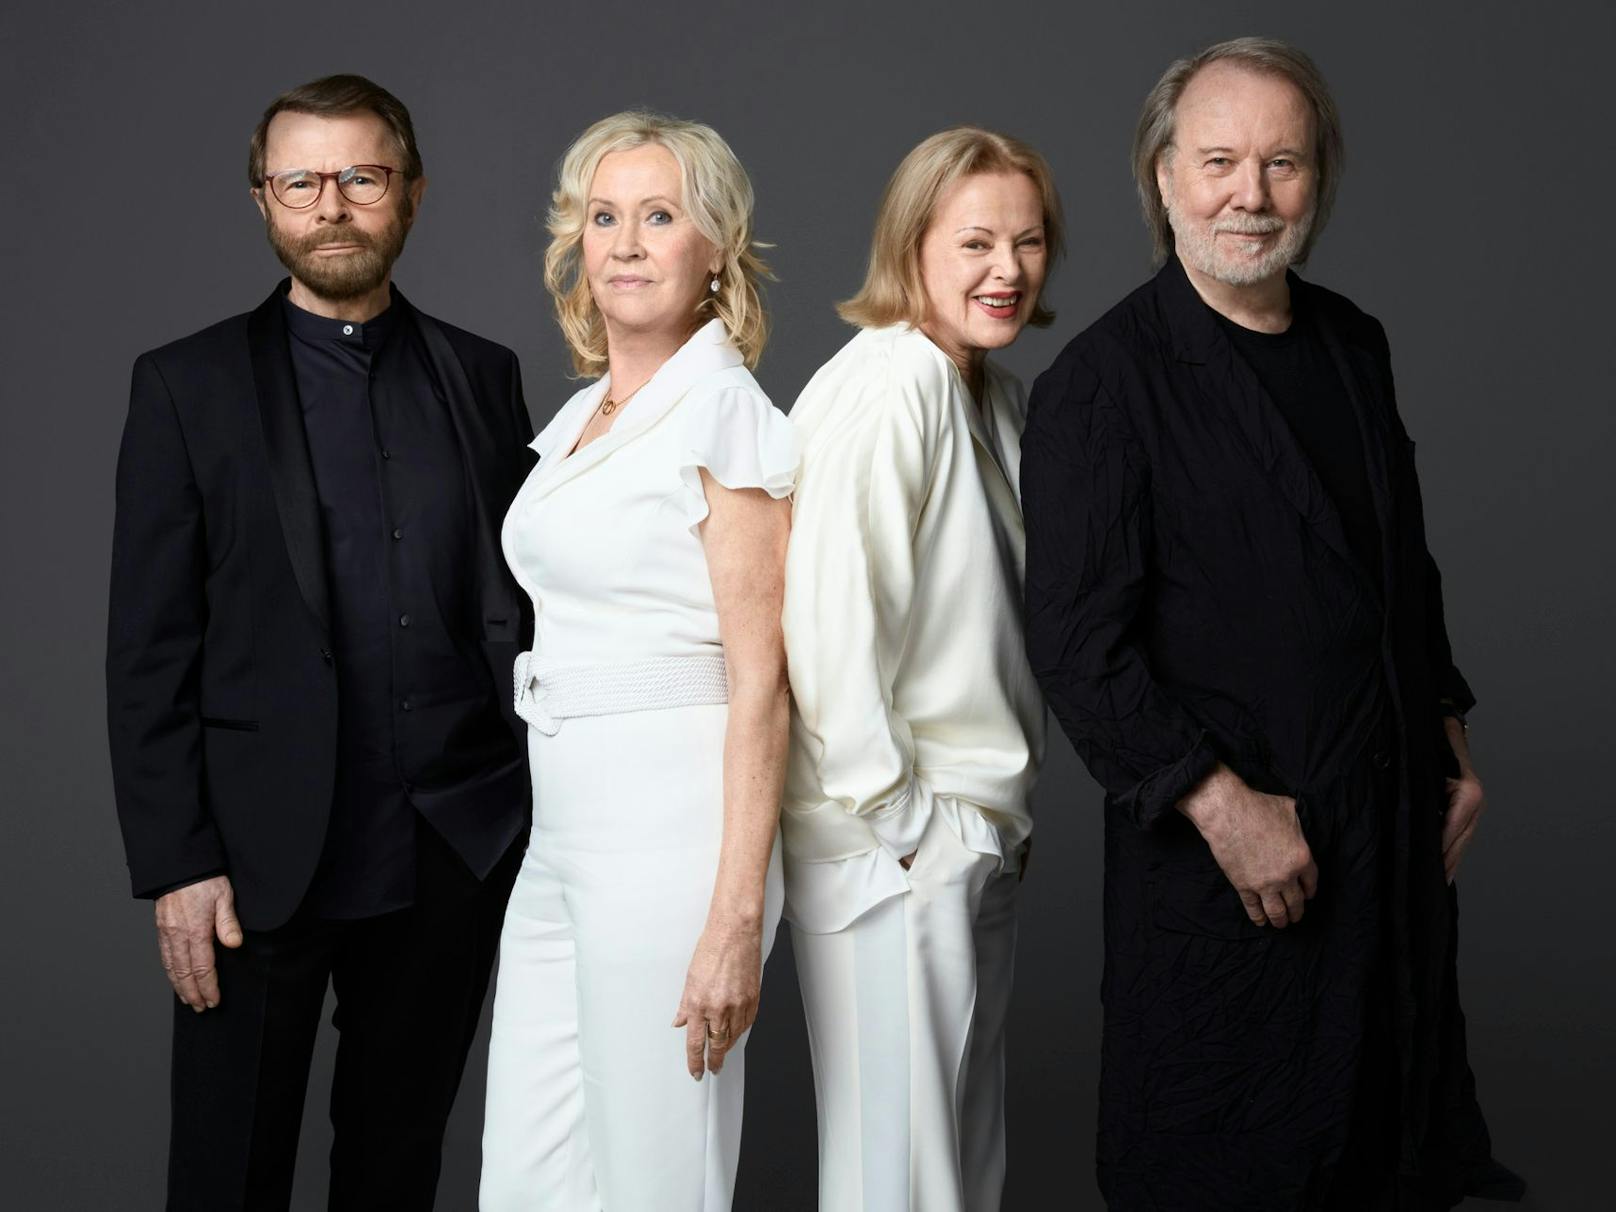 Nach 40 Jahren Pause starten ABBA nun wieder durch